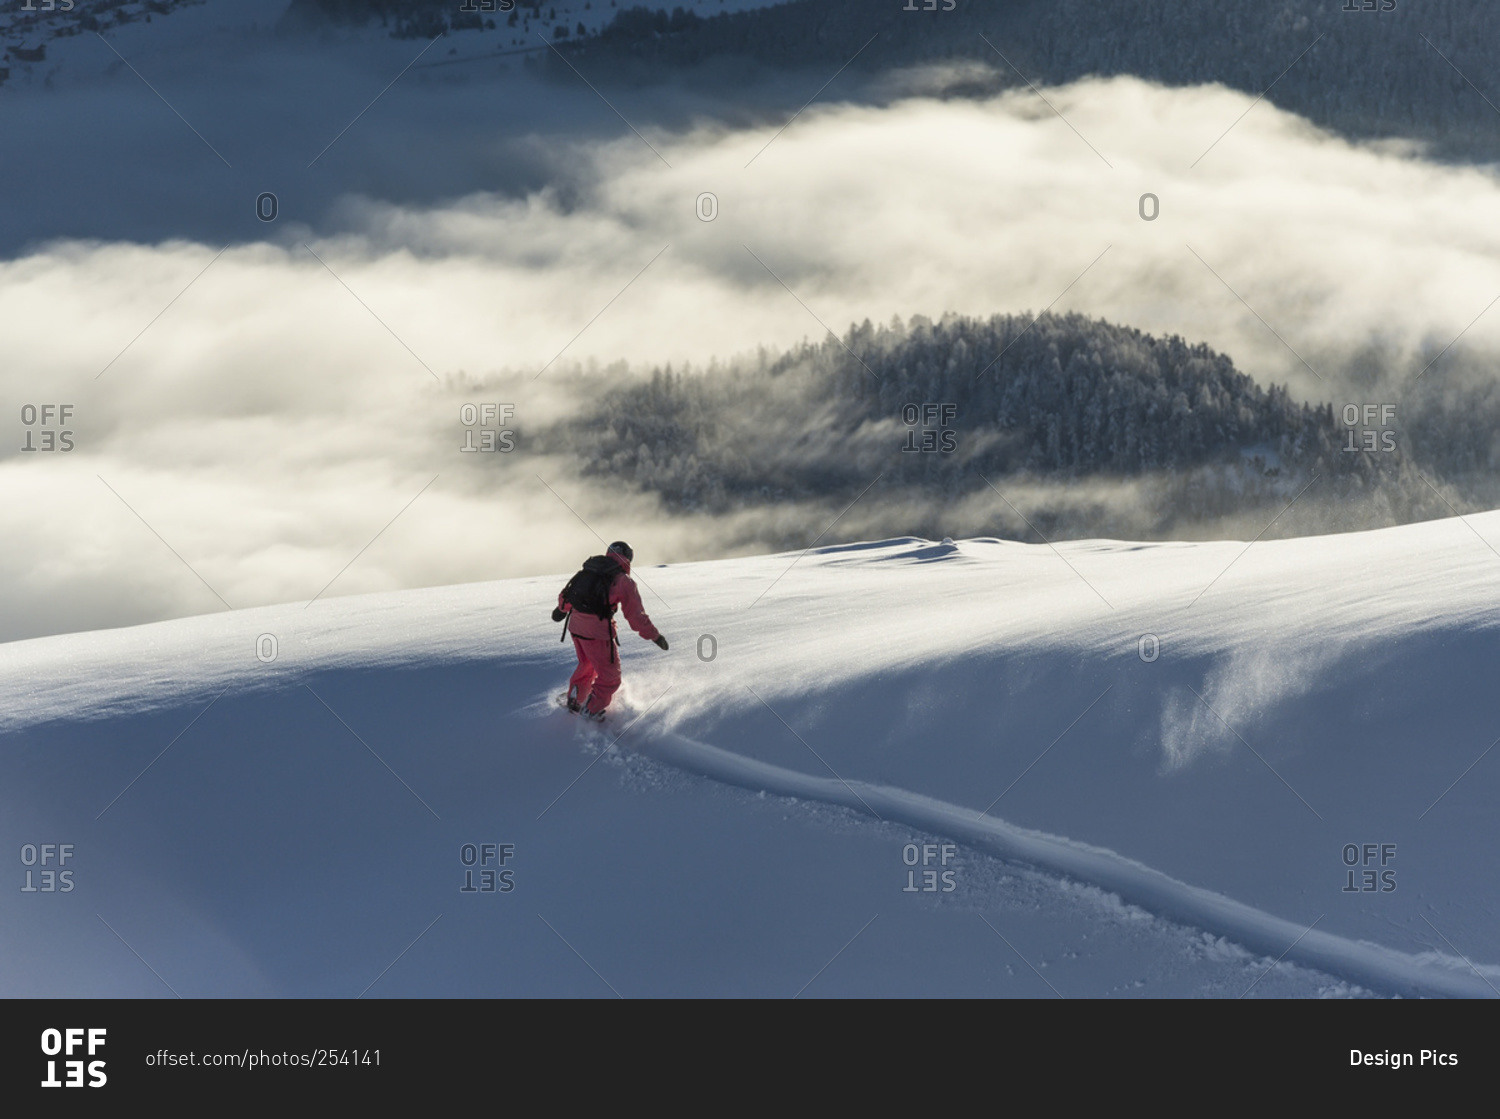 Snowboarding above the clouds in St. Moritz, Graubunden, Switzerland